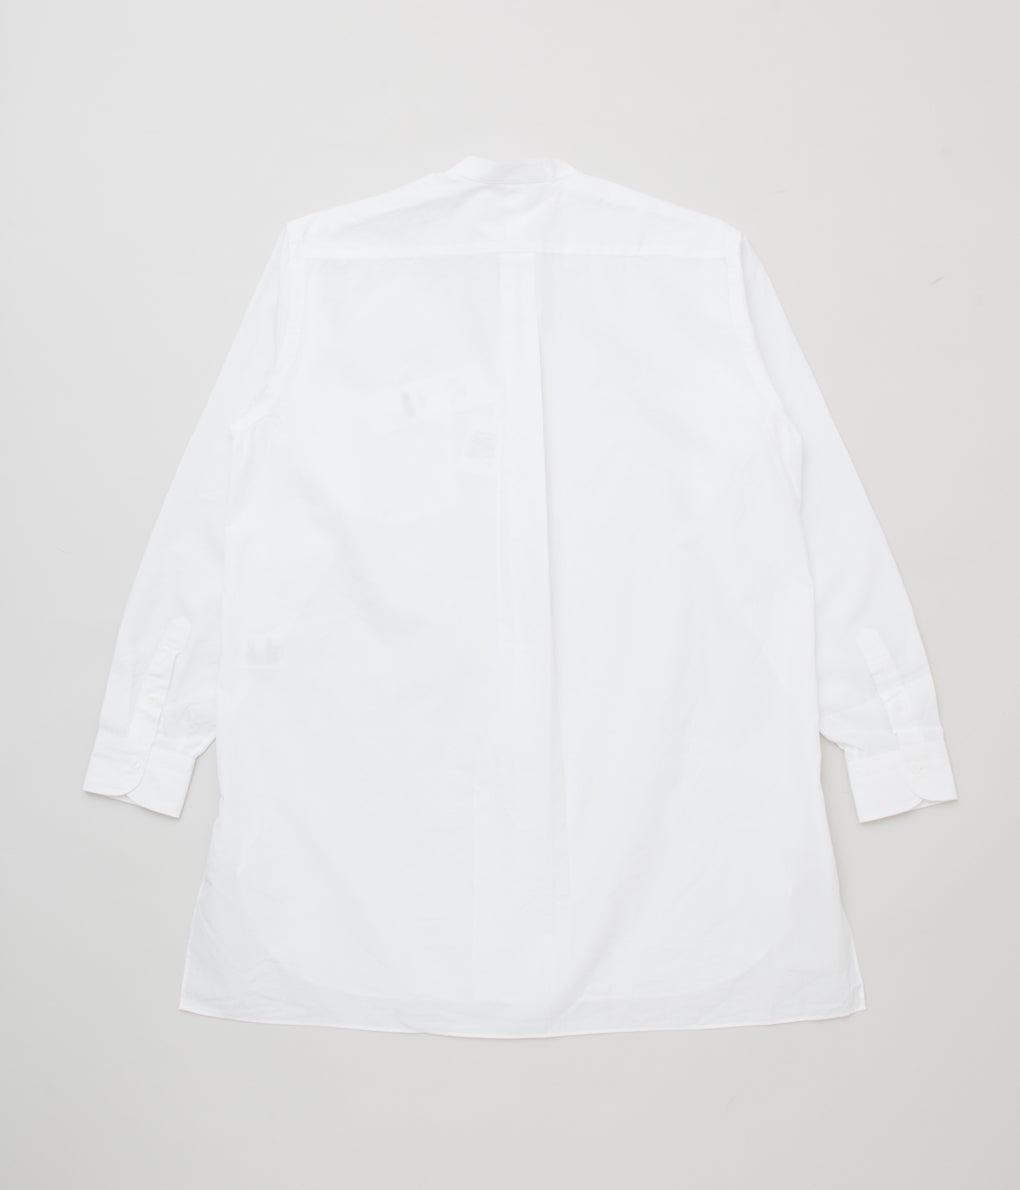 COMOLI "밴드 컬러 셔츠"(WHITE)